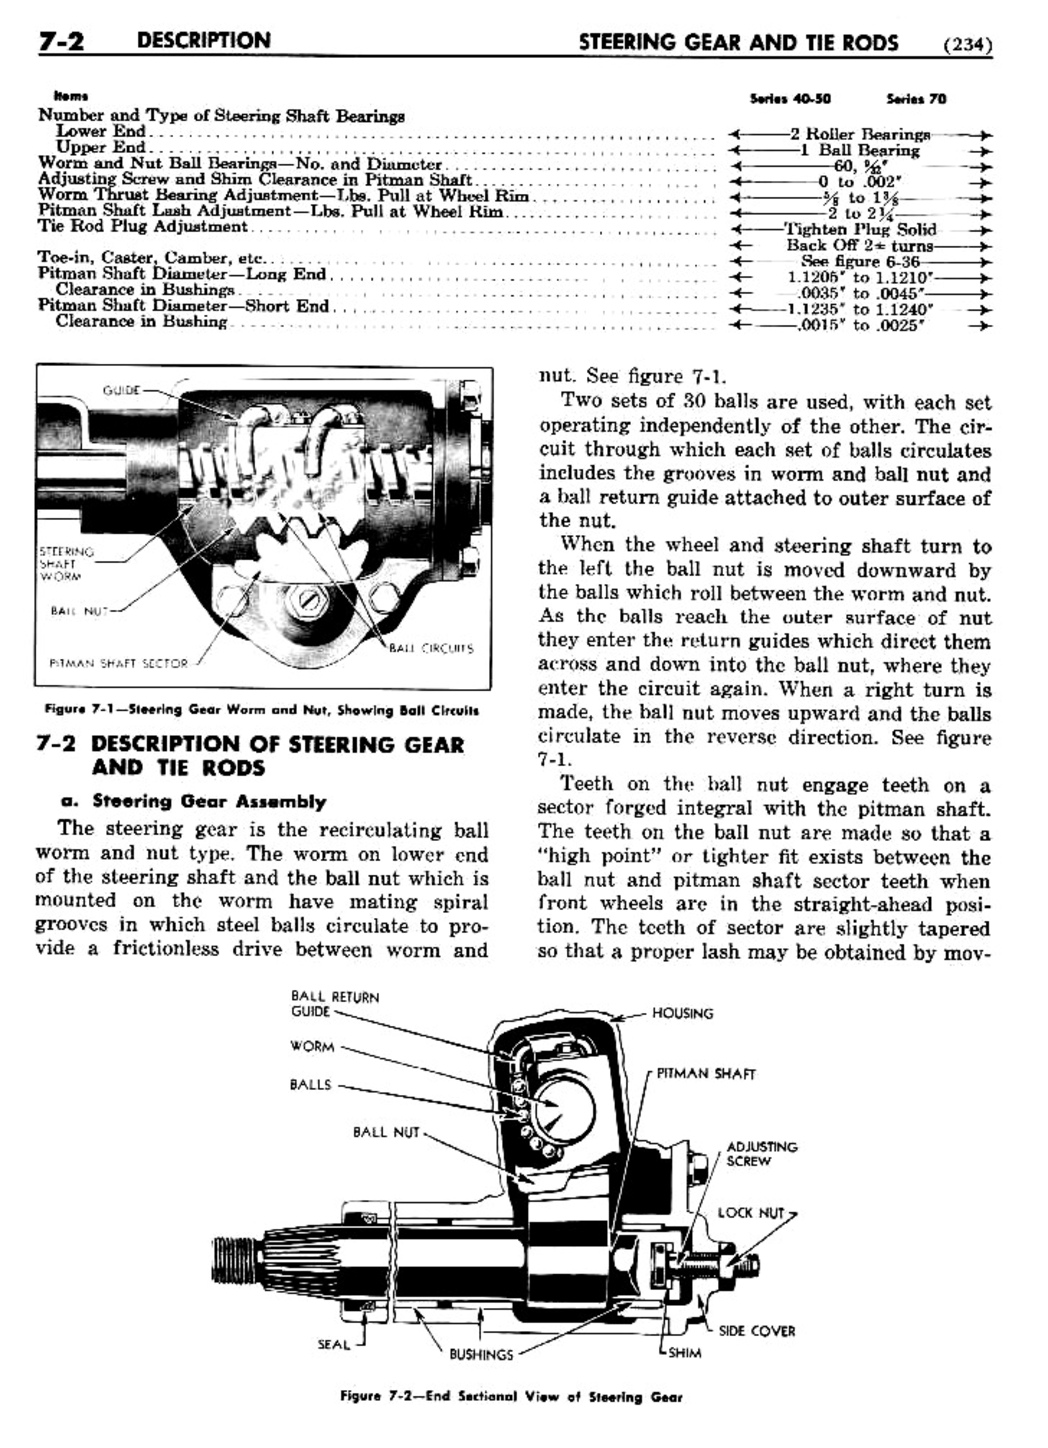 n_08 1948 Buick Shop Manual - Steering-002-002.jpg